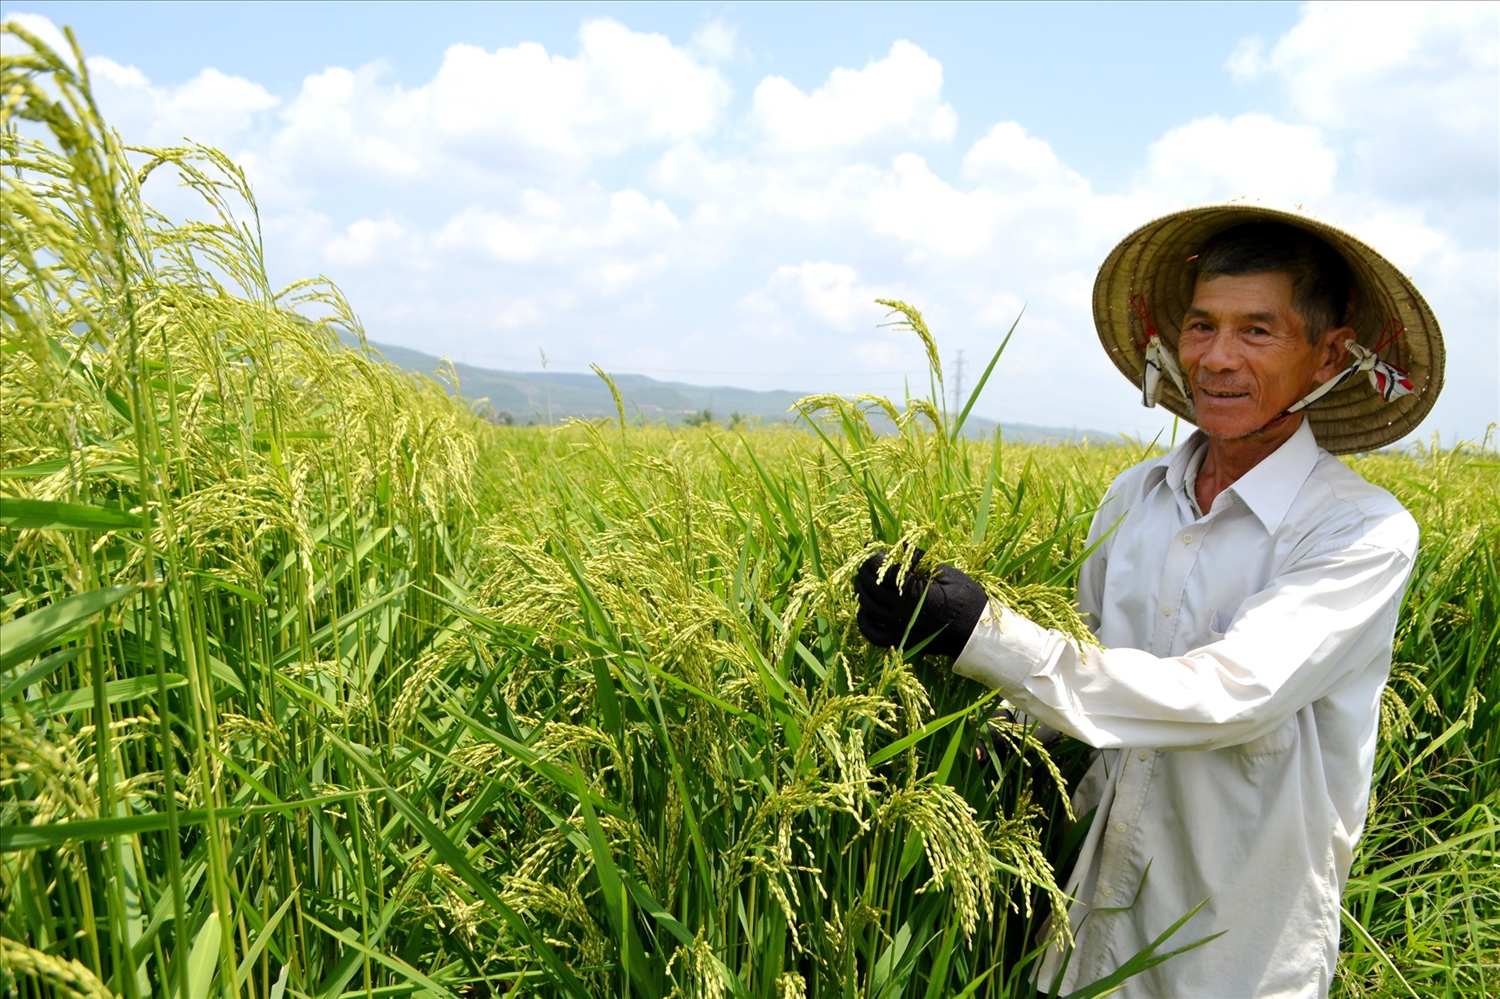 Nông dân thị trấn Ái Nghĩa, thành viên HTX Nông nghiệp Ái Nghĩa (huyện Đại Lộc) bên giống lúa mẹ đang ngậm sữa. Ảnh: KK